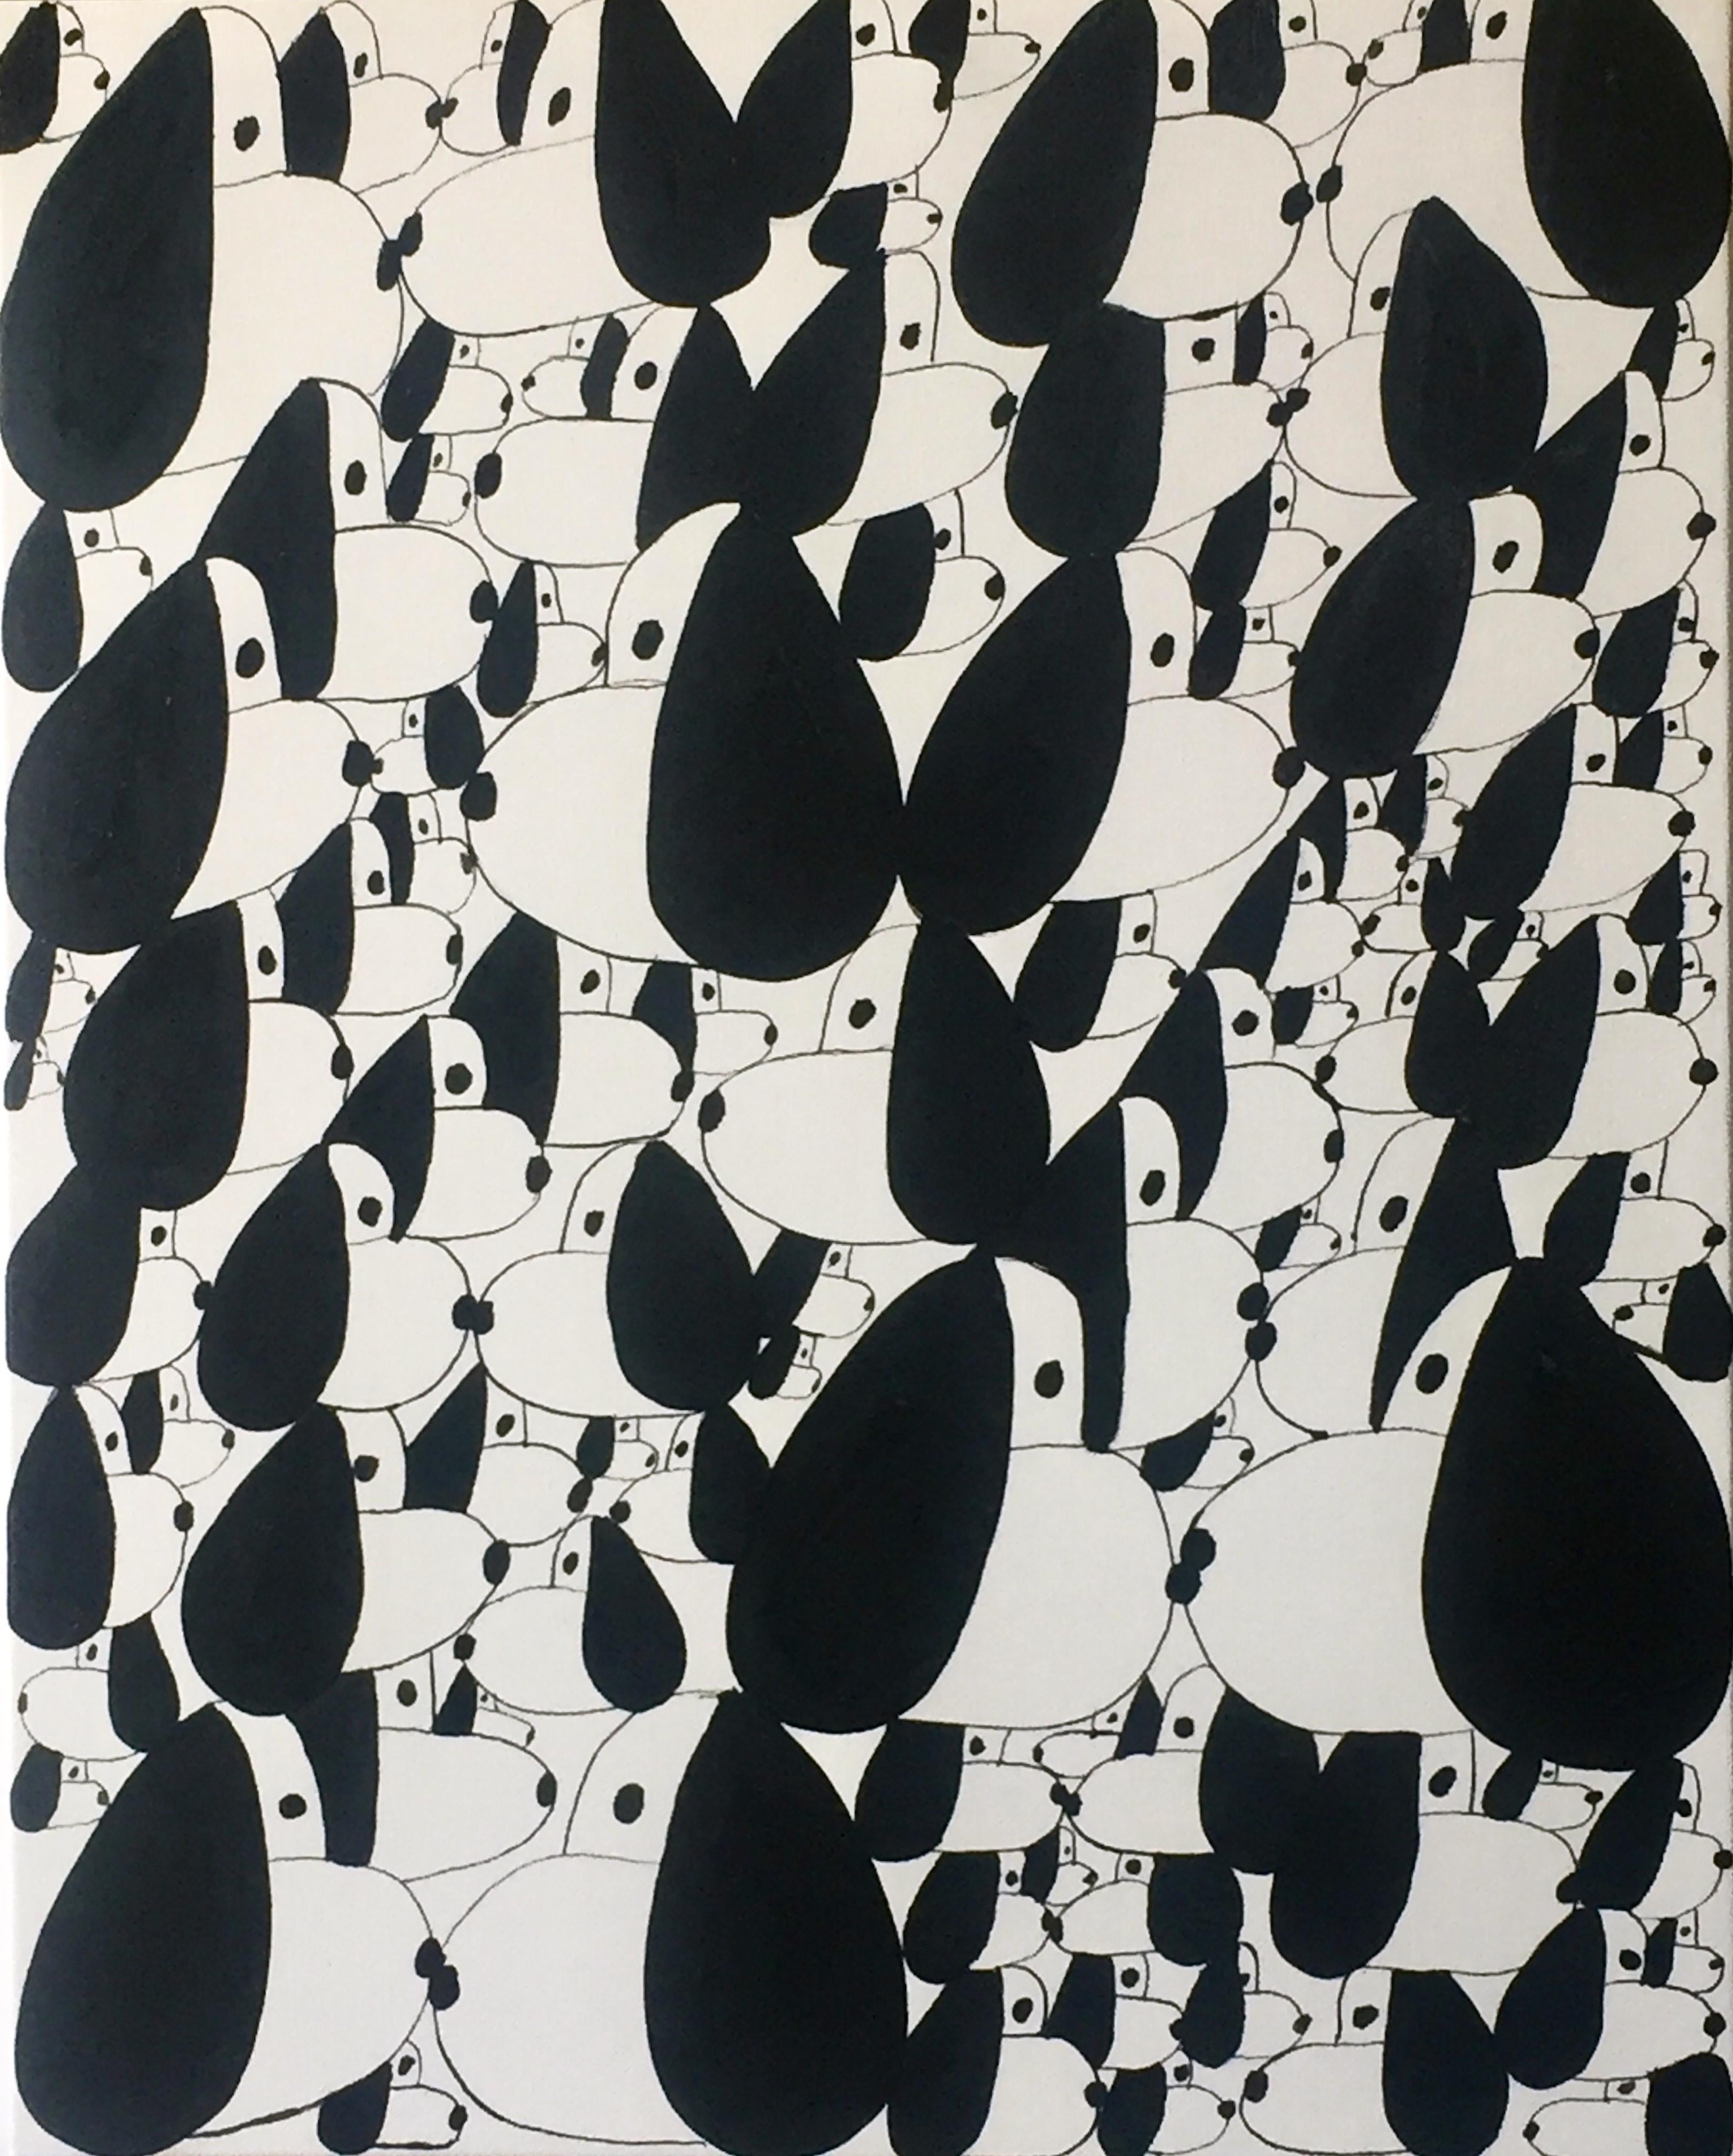 Schwarz-weiße Mohnblumen in einem Crowd-Gemälde auf Leinwand 16x20 Zoll